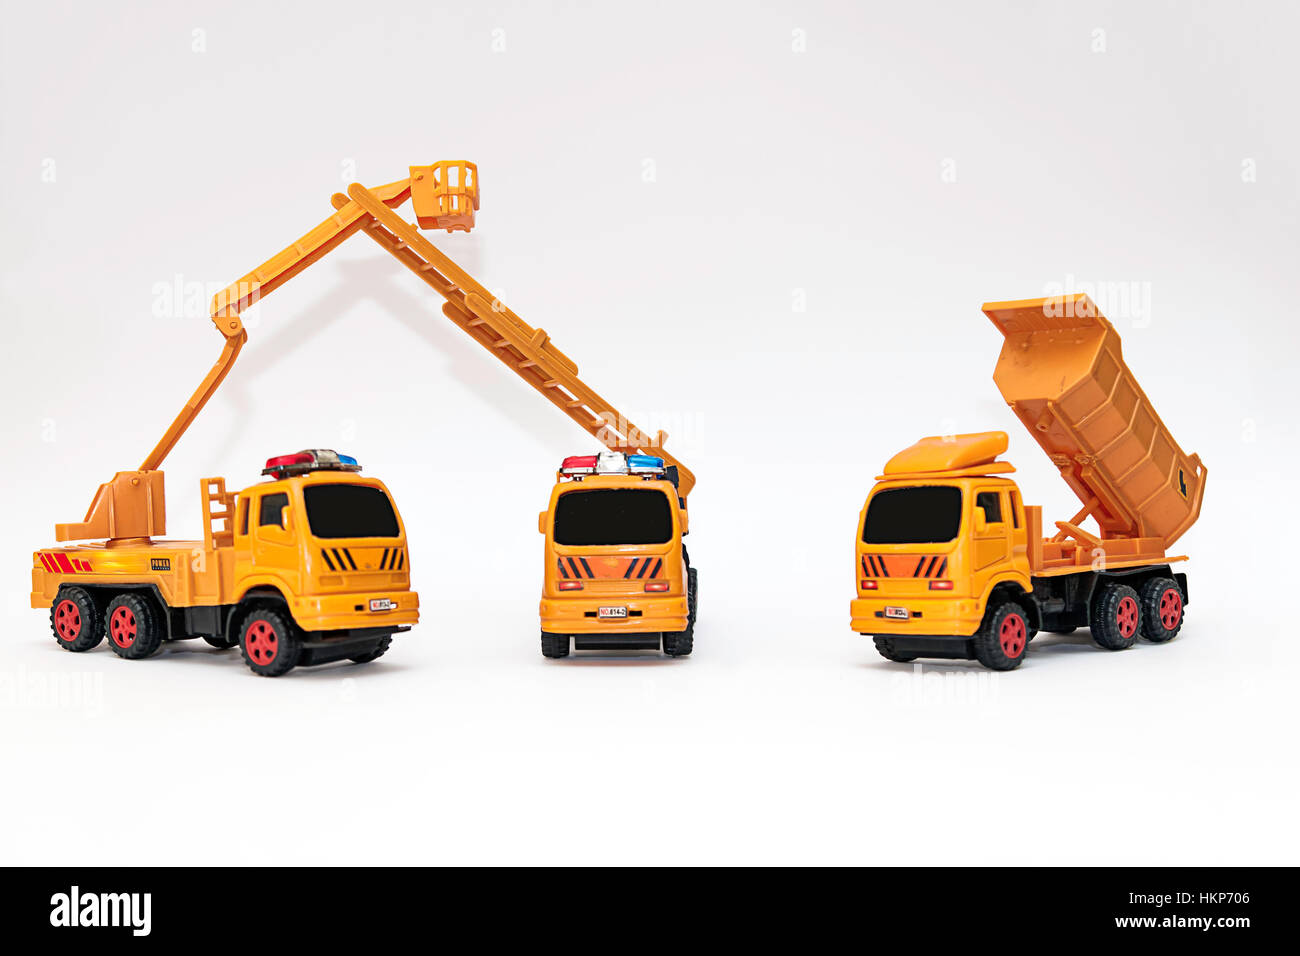 Set of orange construction toys on white background Stock Photo